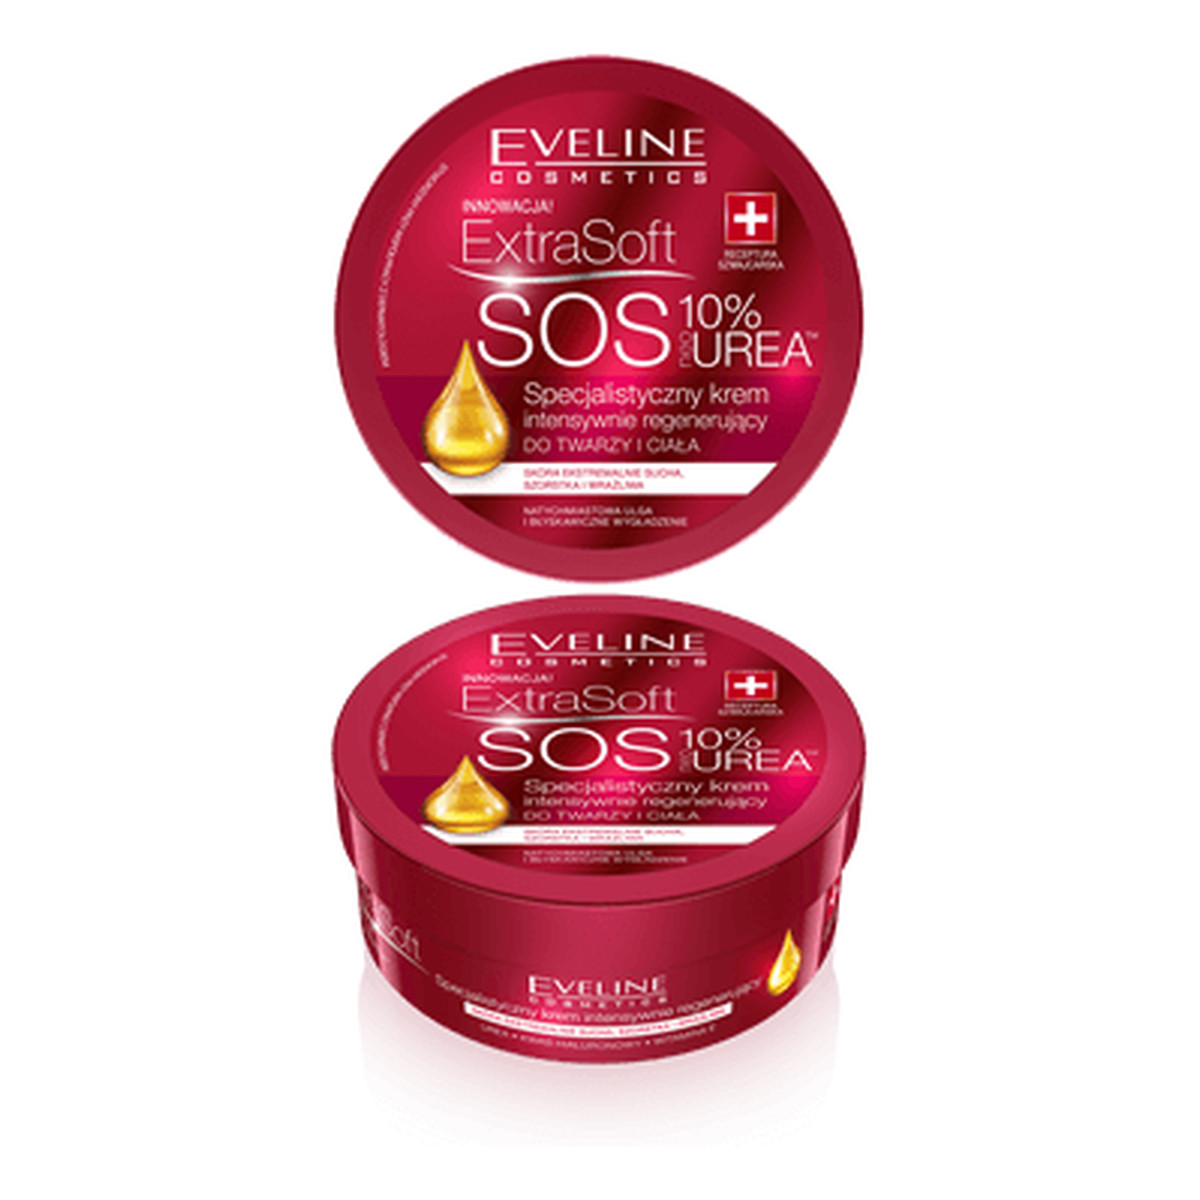 Eveline Extra Soft SOS – 10% Urea specjalistyczny krem intensywnie regenerujący do twarzy i ciała 175ml